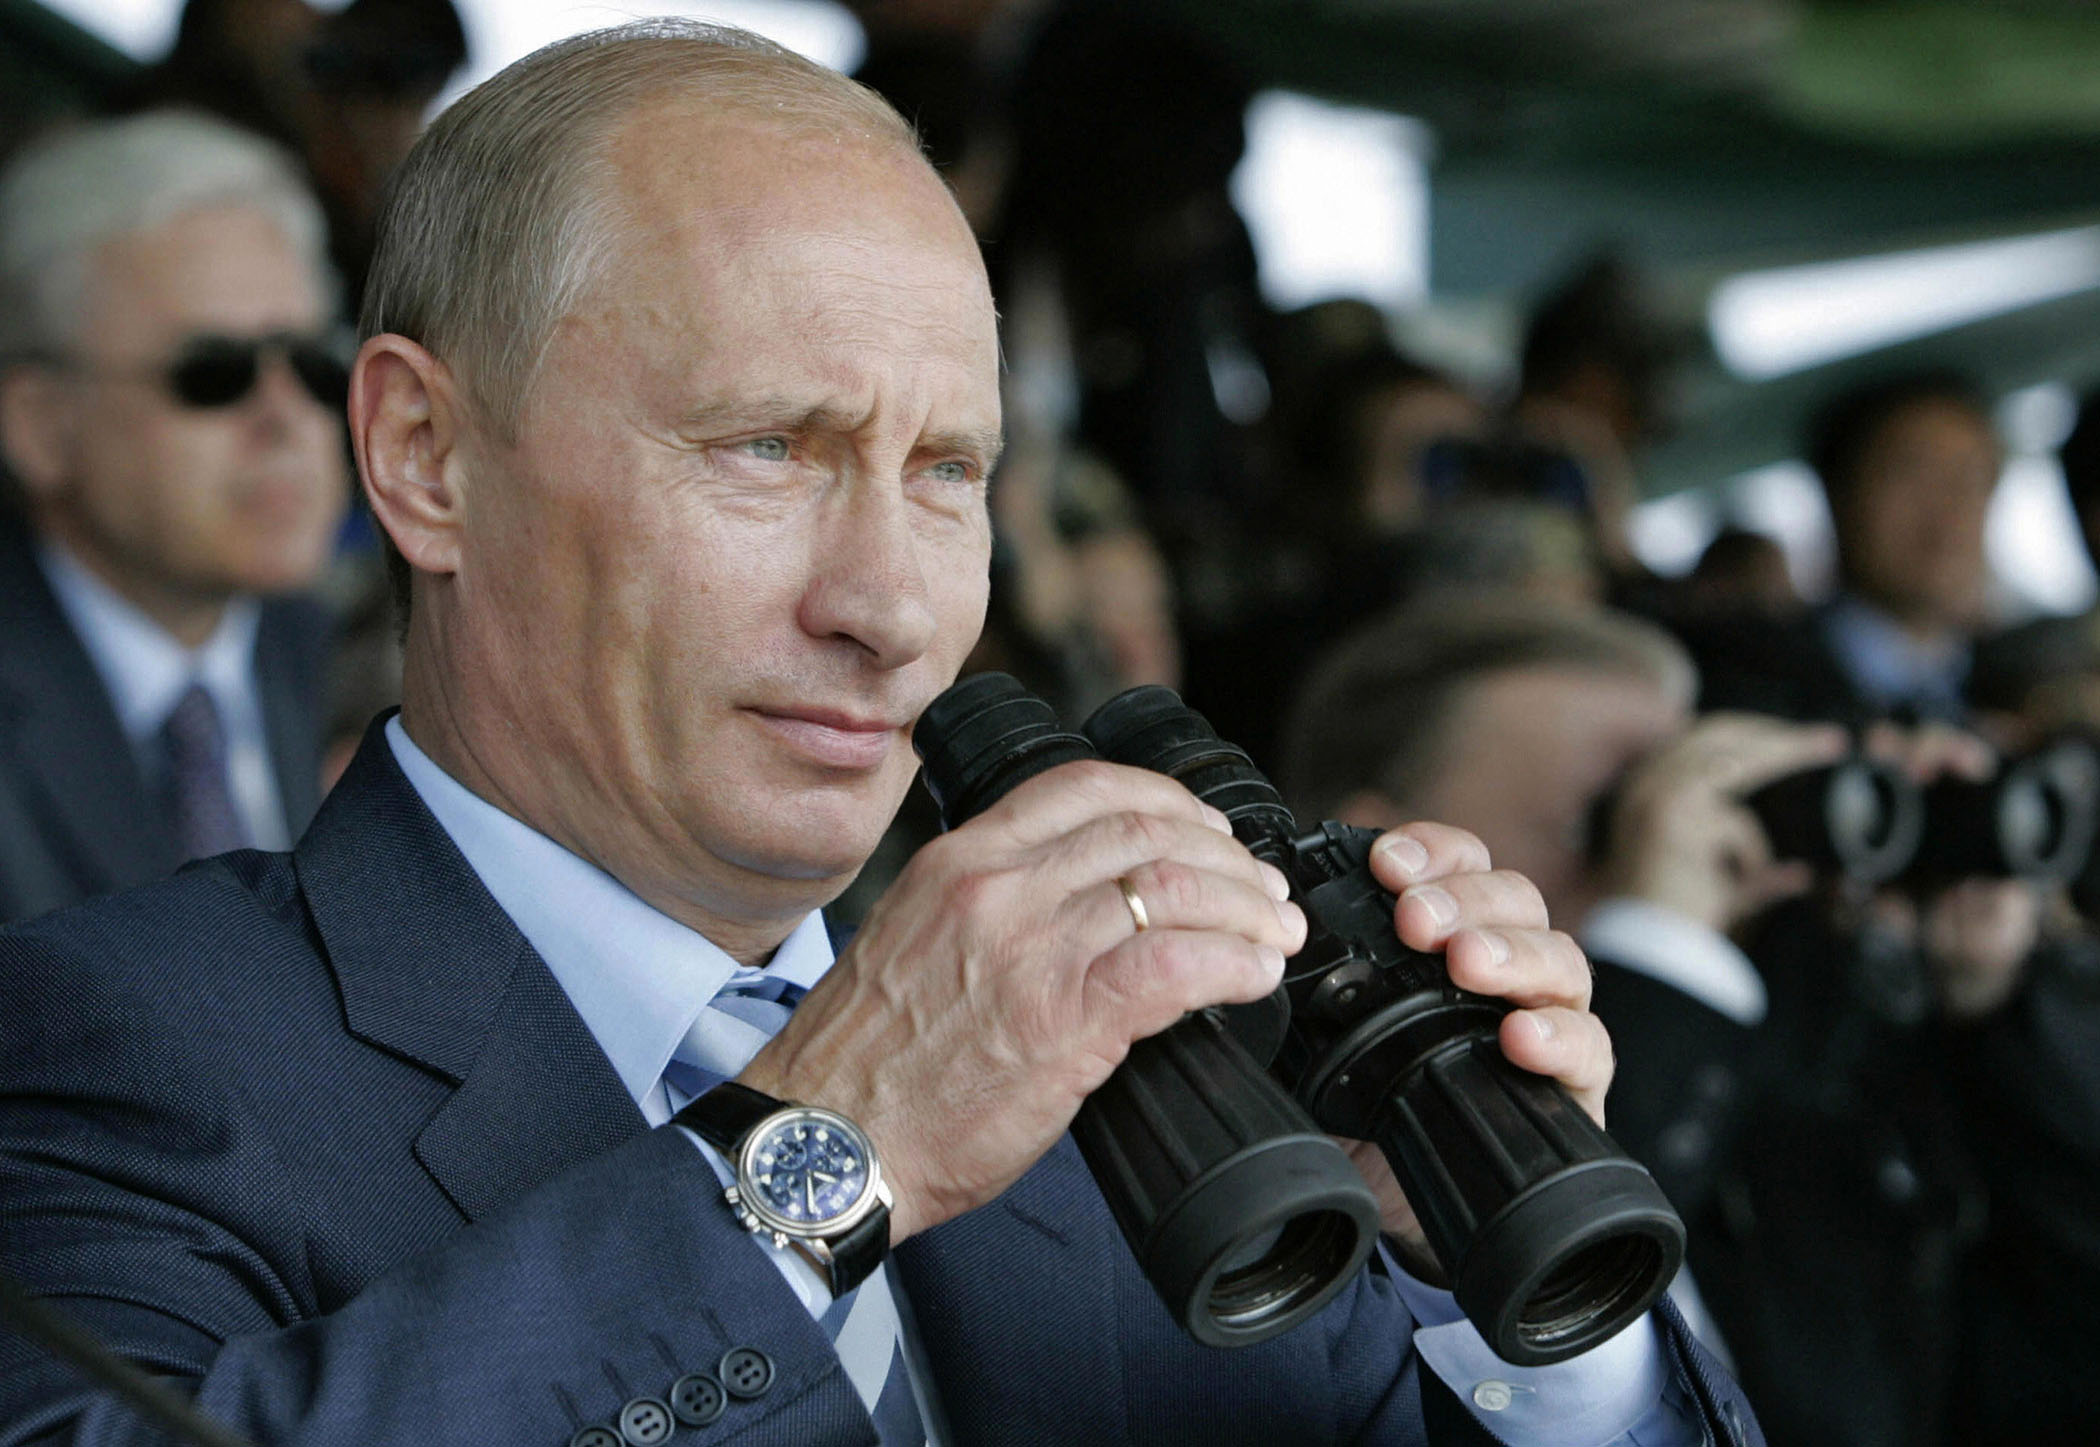 Putin looking through binoculars